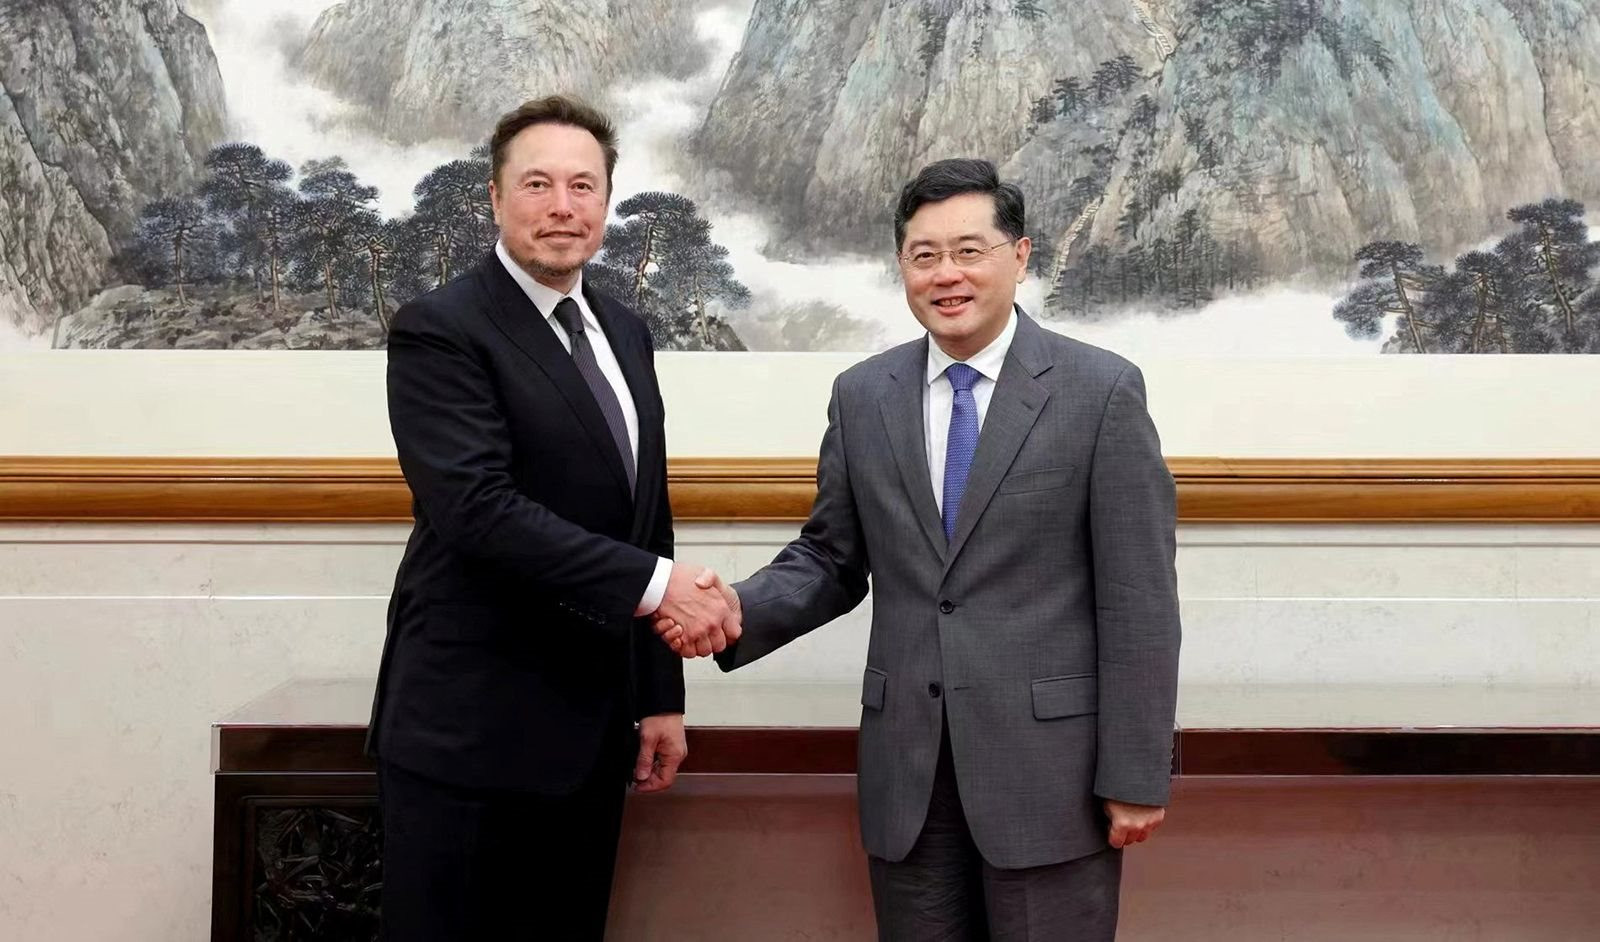 Elon Musk vừa thực hiện chuyến công tác 2 ngày ở Trung Quốc, 'rất quan trọng' với tương lai Tesla - Ảnh 1.